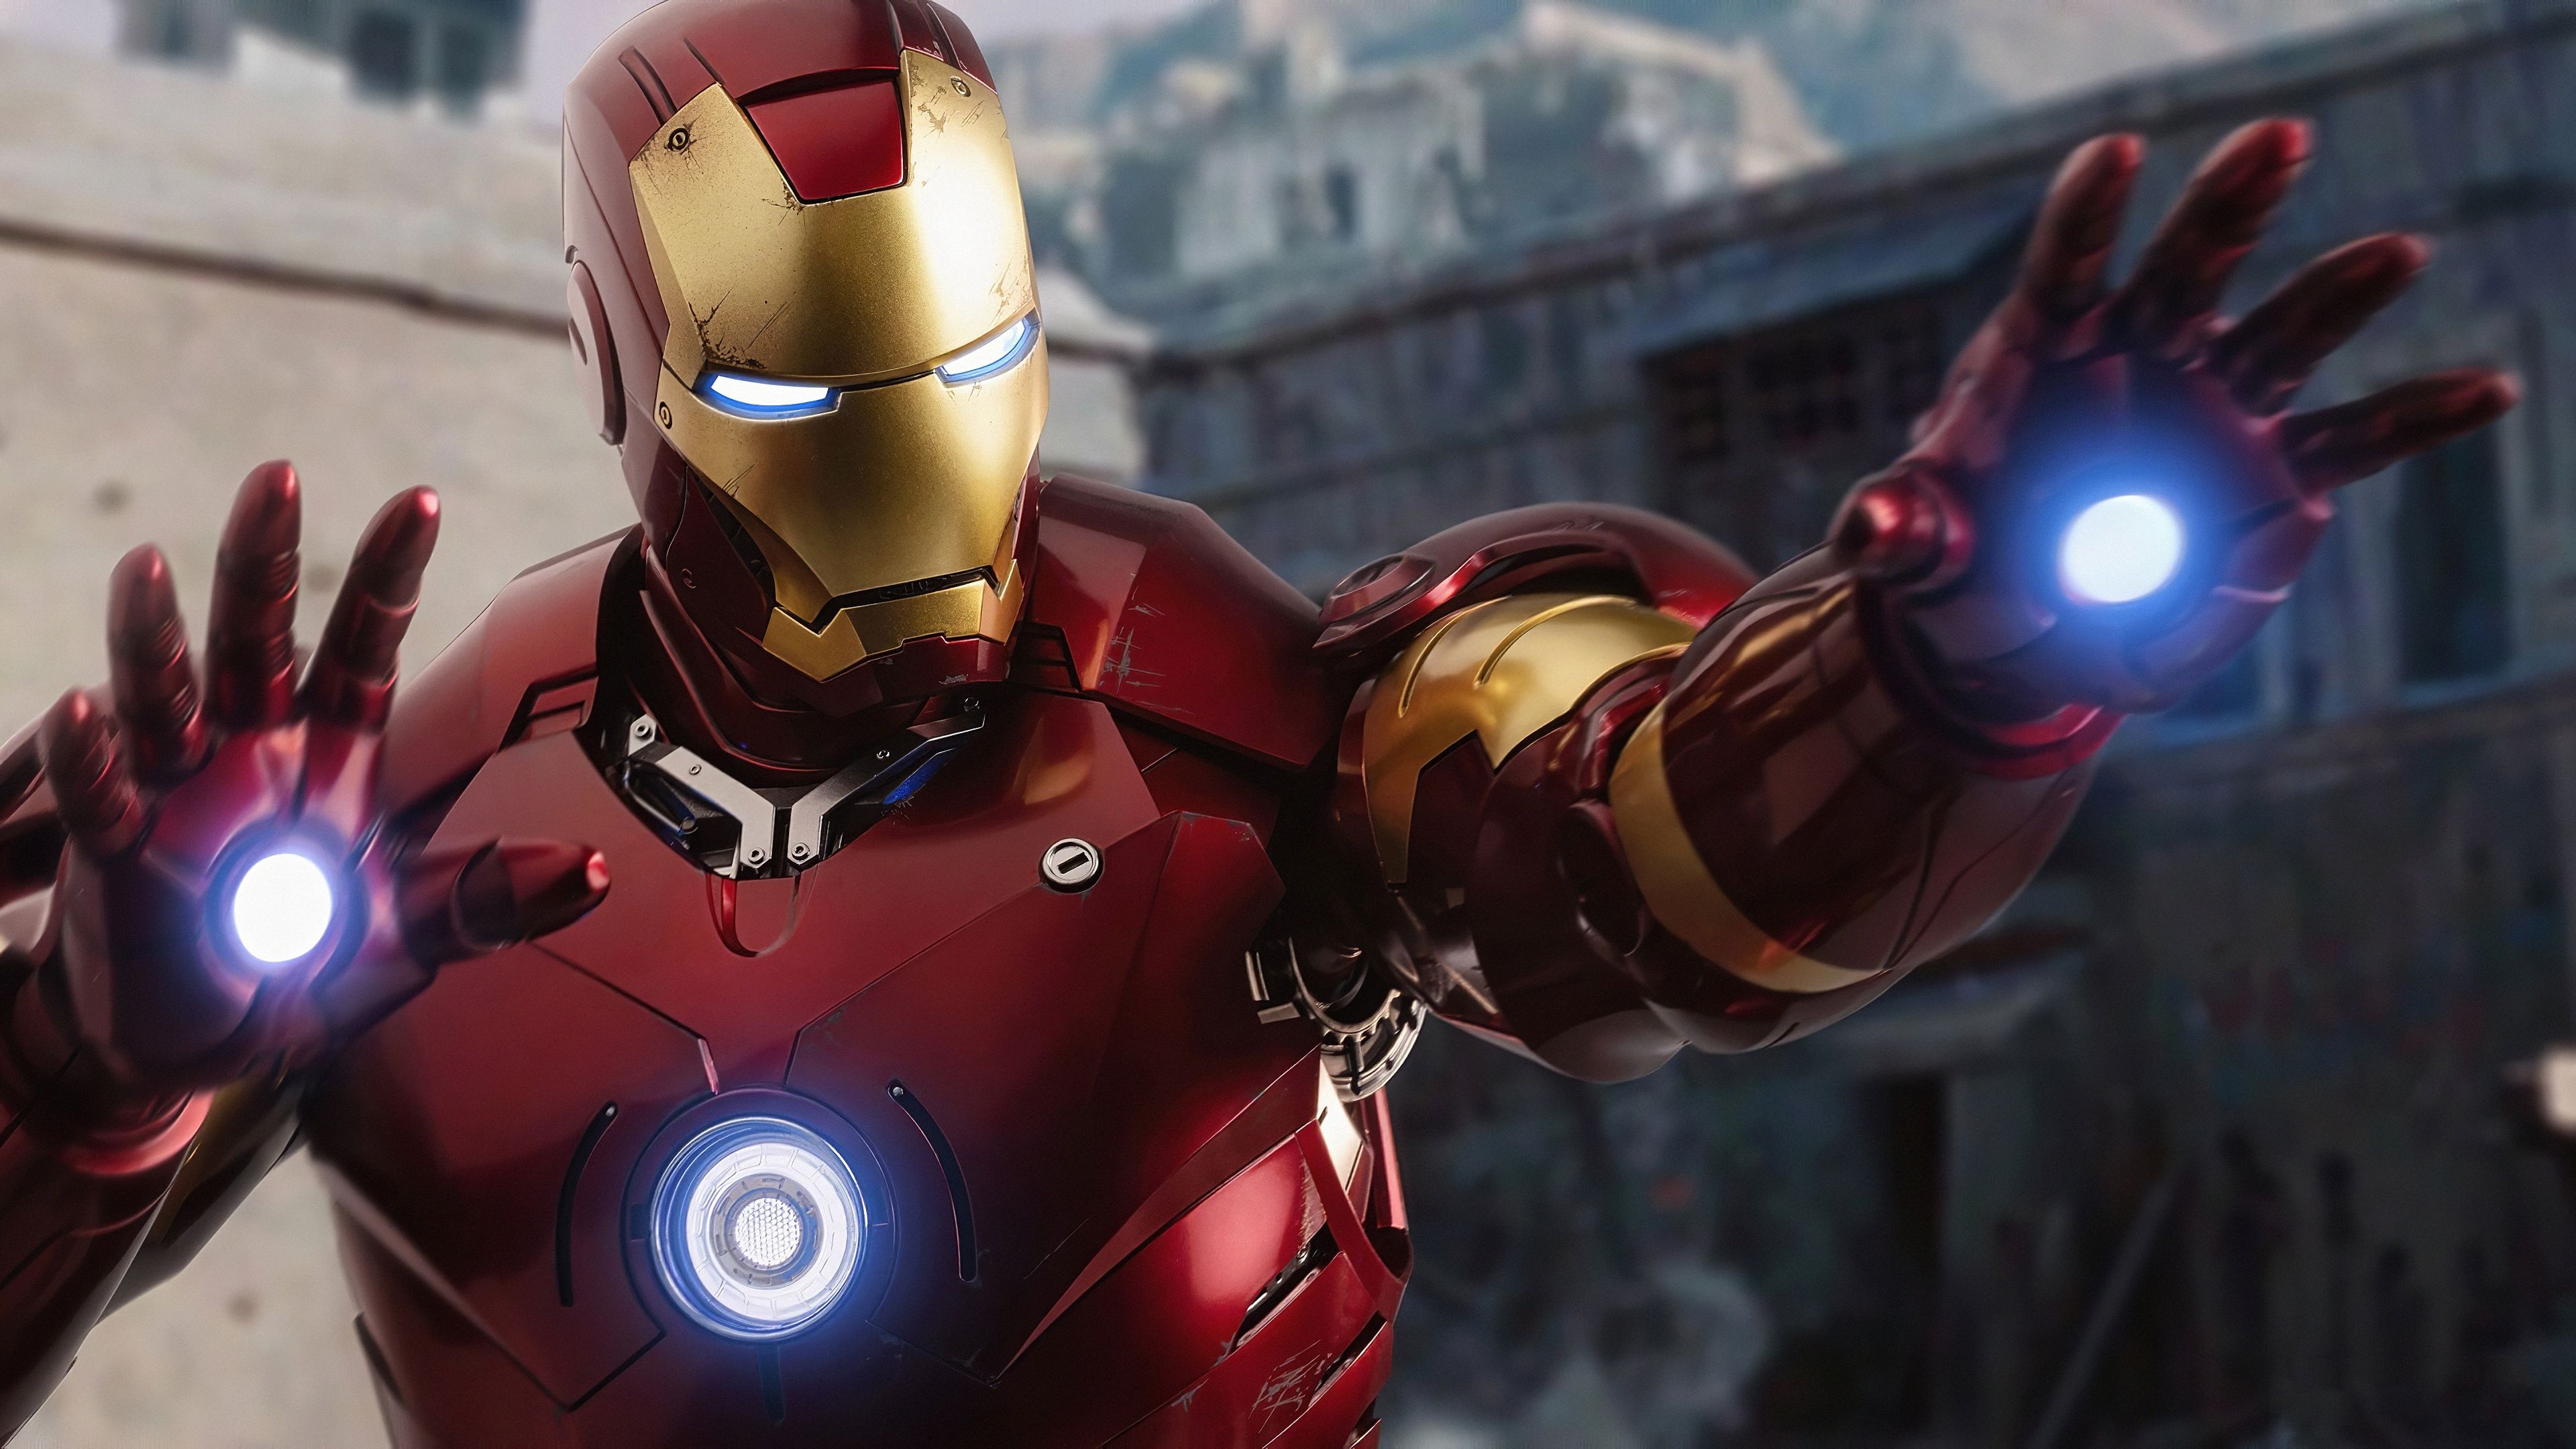 Iron Man, Ready for fight, HD phone wallpaper, Dynamic pose, 3840x2160 4K Desktop